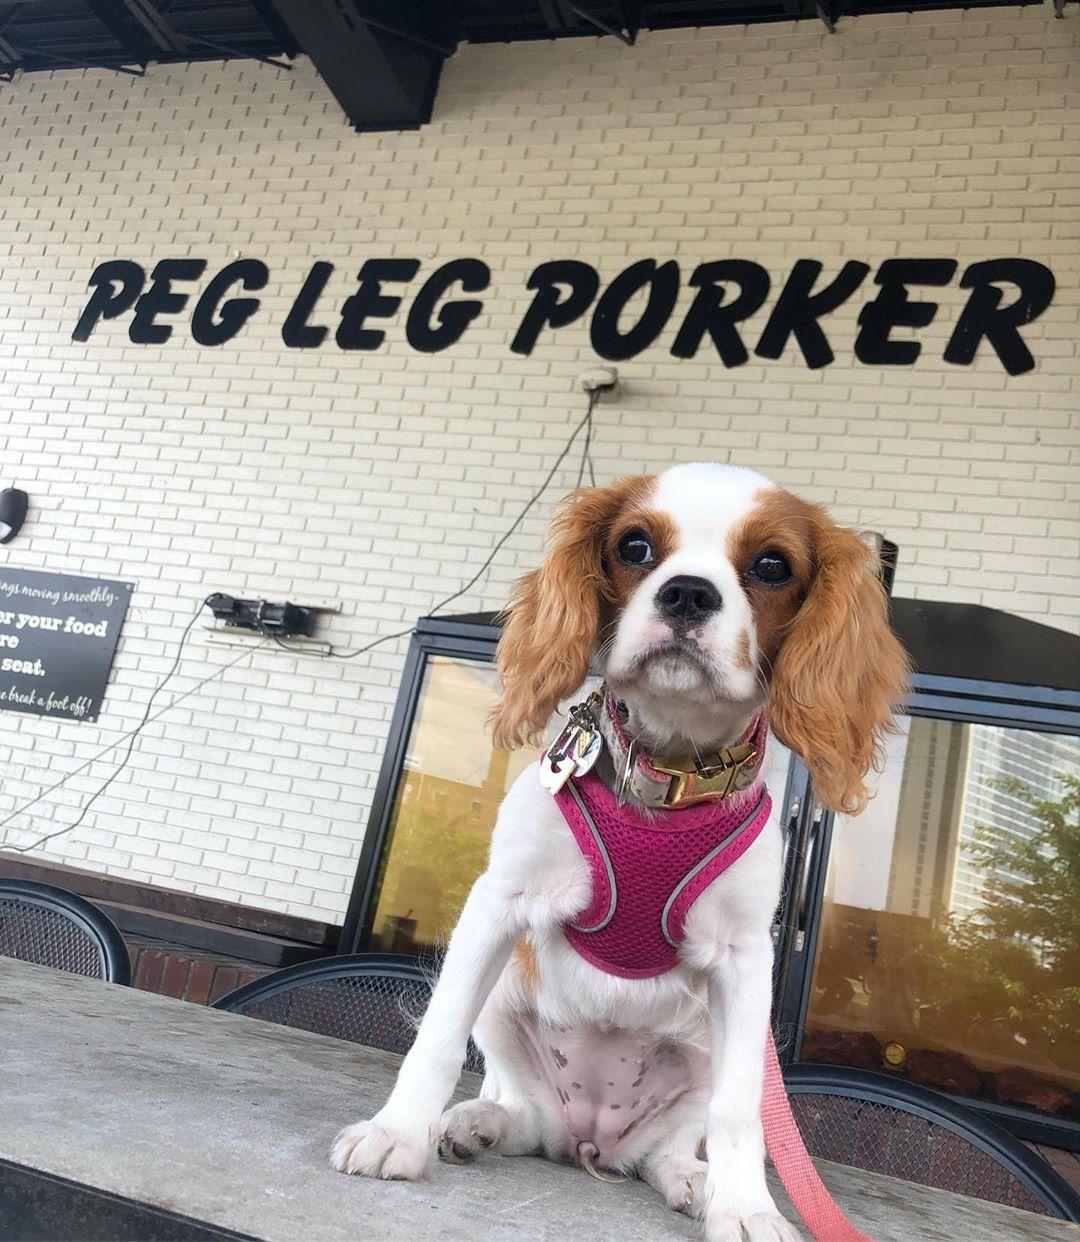 Pet Friendly Peg Leg Porker